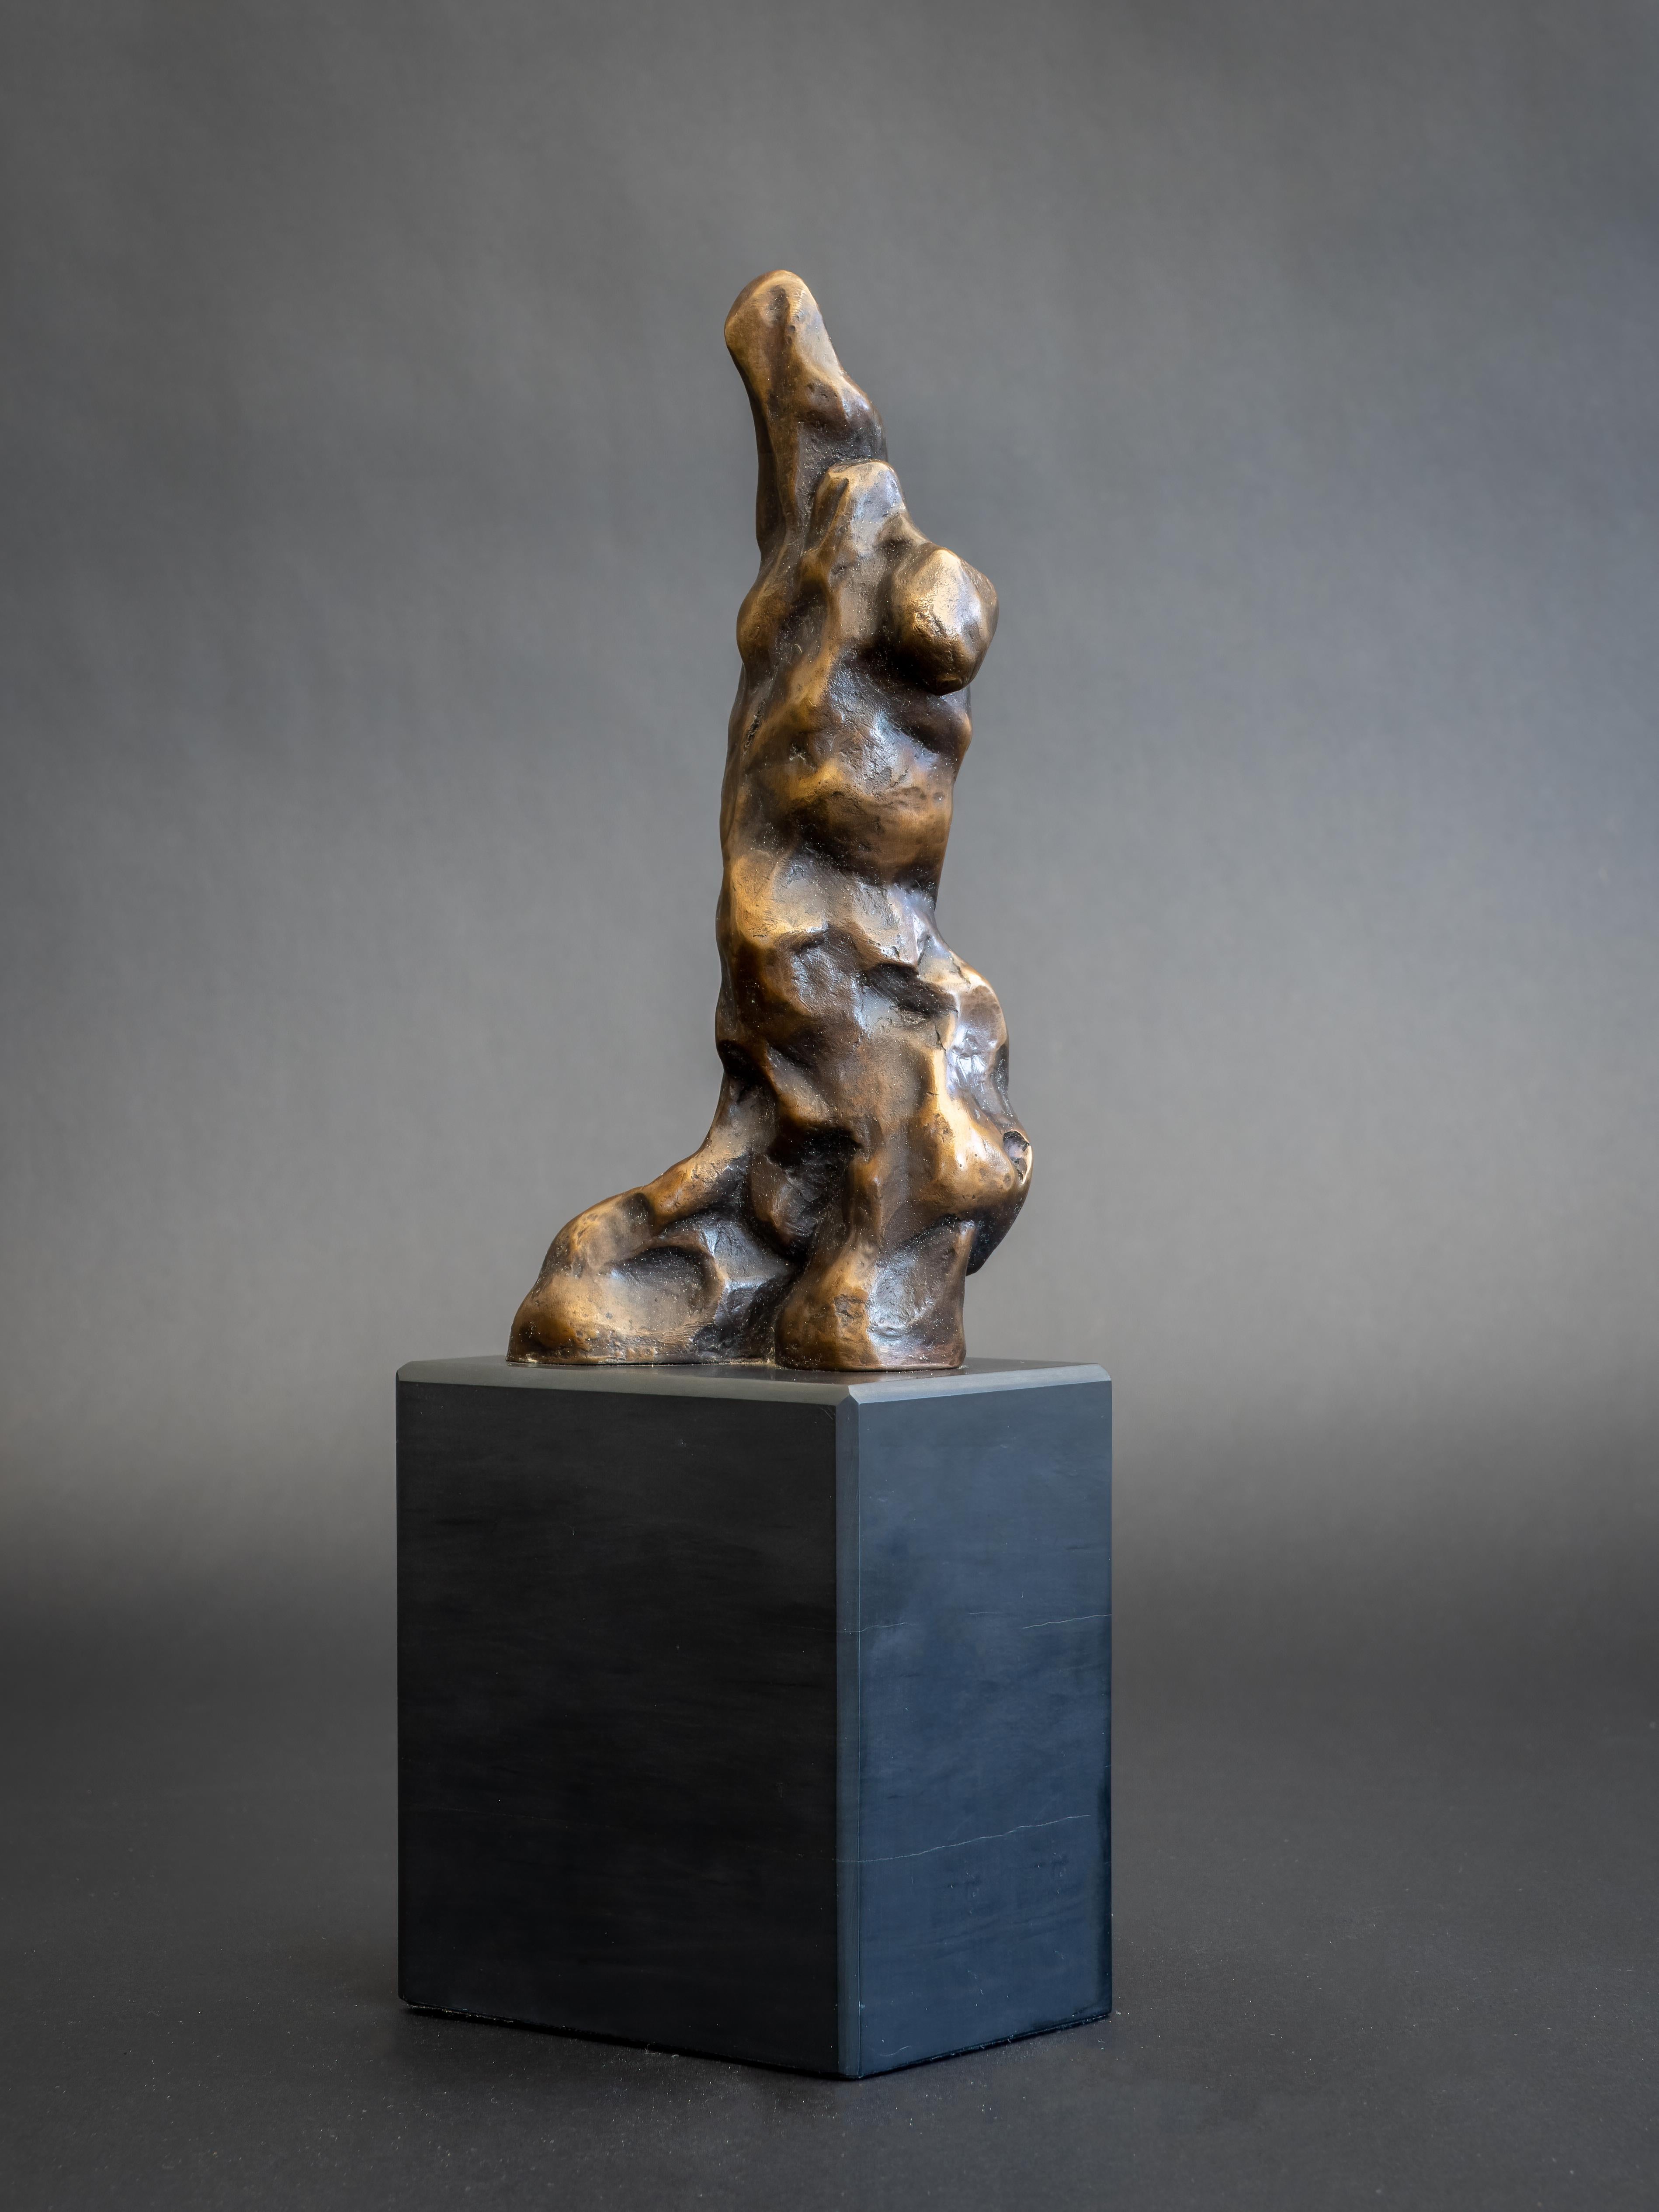 Adam II - Originale figurative Bronzeskulpturen - Kunstwerke zum Verkauf - Zeitgenössische Kunst (Gold), Figurative Sculpture, von Nicola Godden